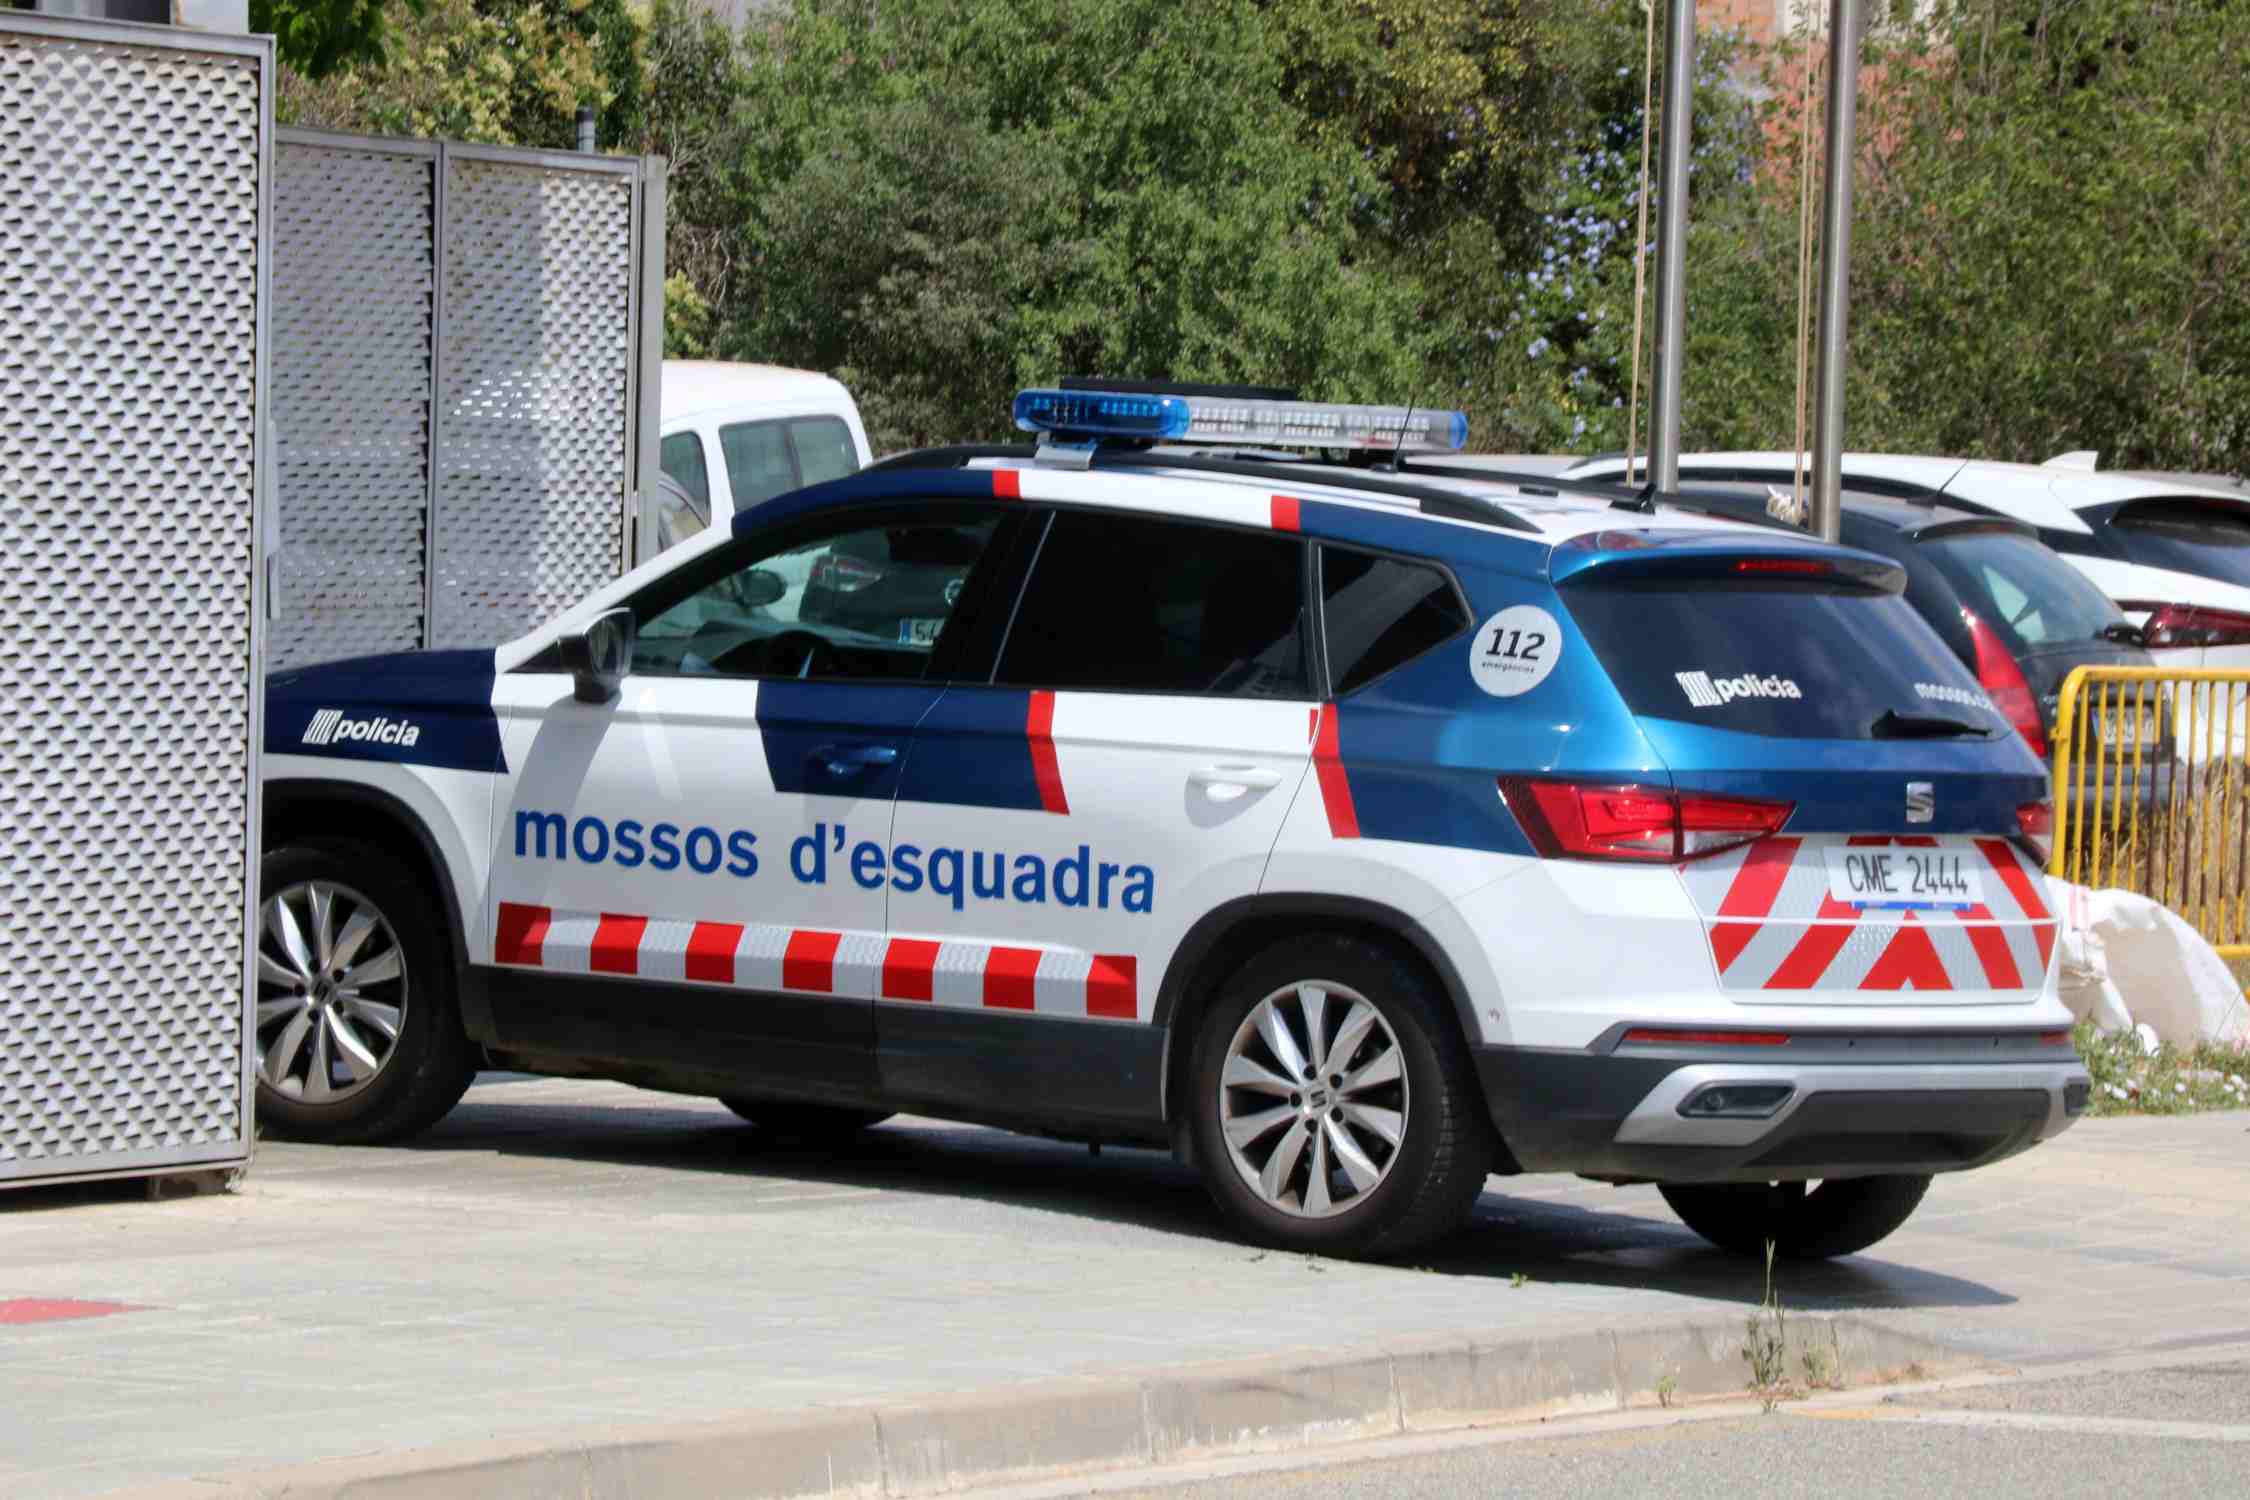 recurs cotxe mossos comissaria vendrell gemma sanchez acn